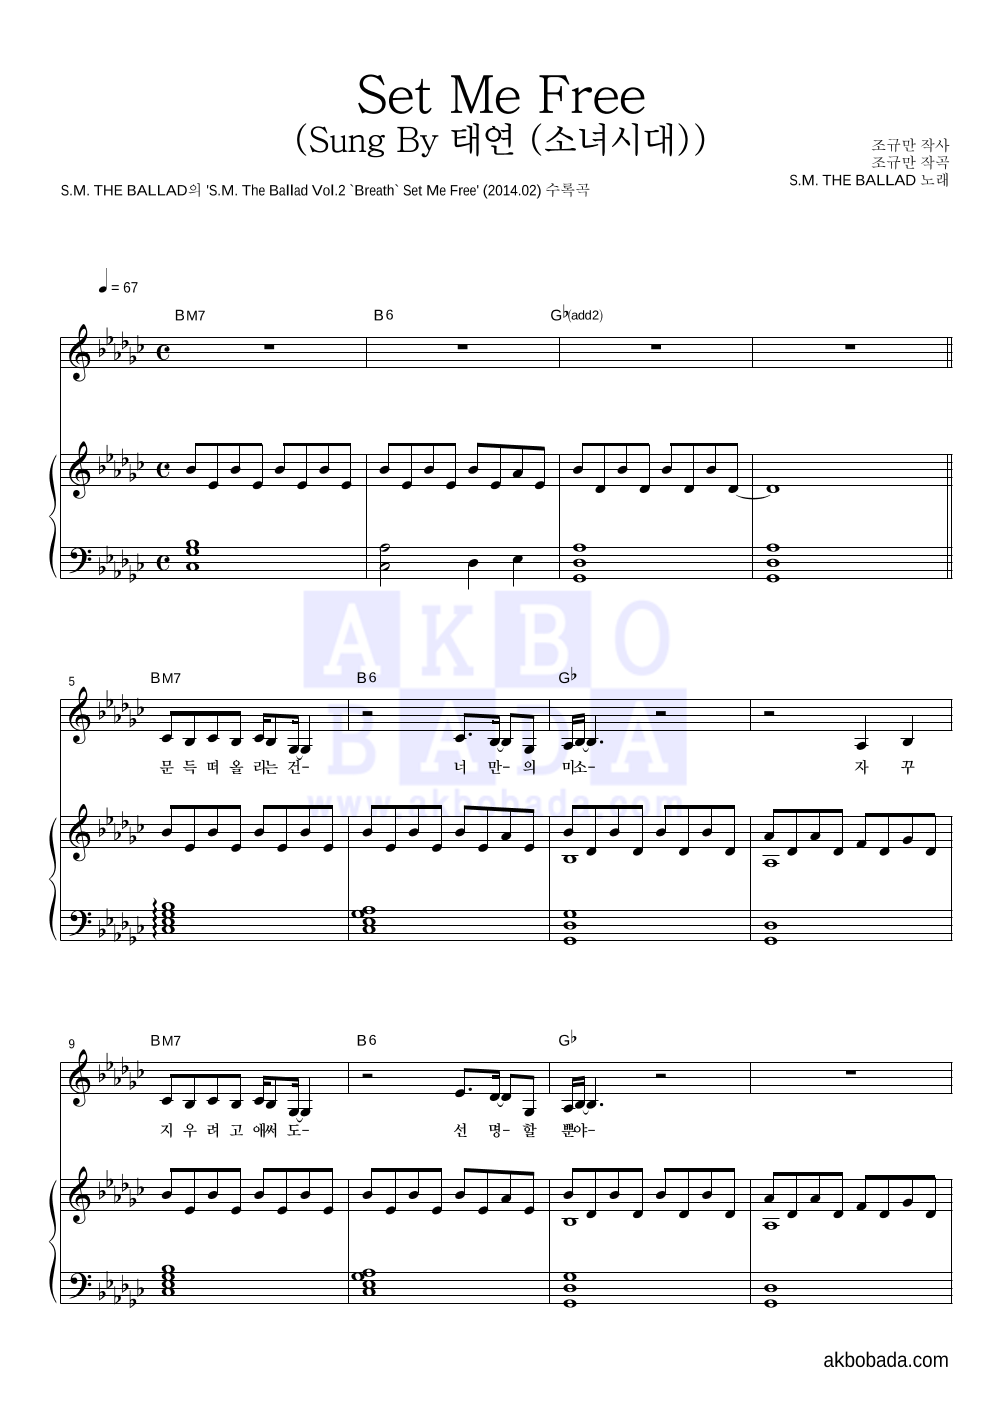 S.M. THE BALLAD - Set Me Free (Sung By 태연 (소녀시대)) 피아노 3단 악보 